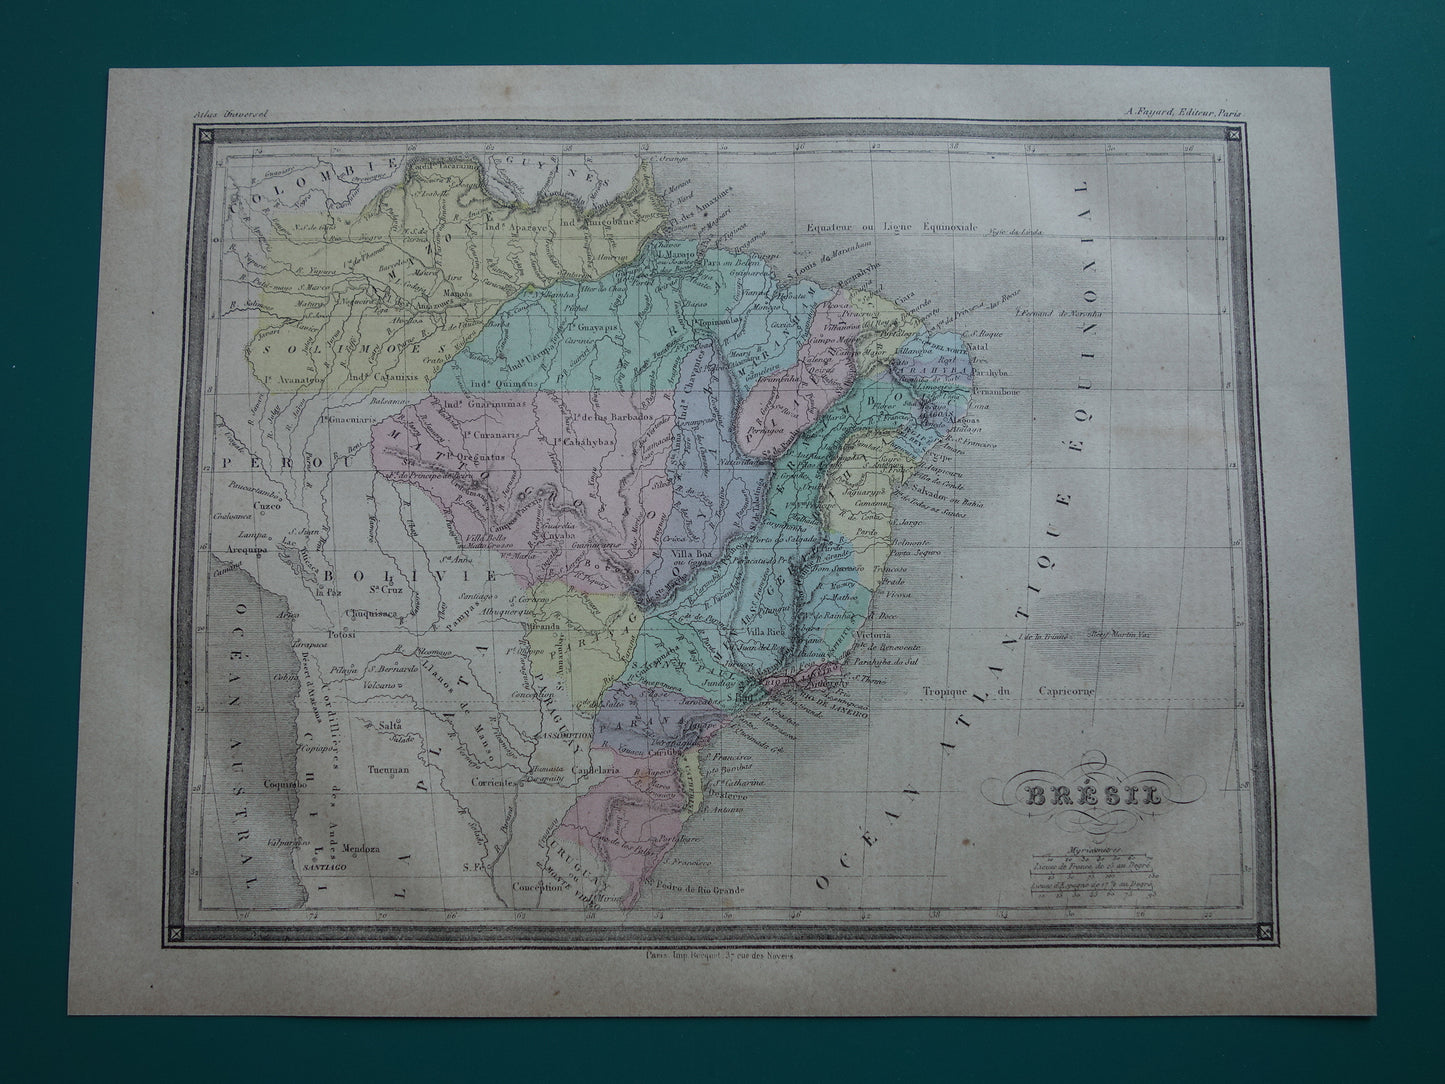 BRAZILIË Oude kaart van Brazilië Originele antieke handgekleurde landkaart uit 1877